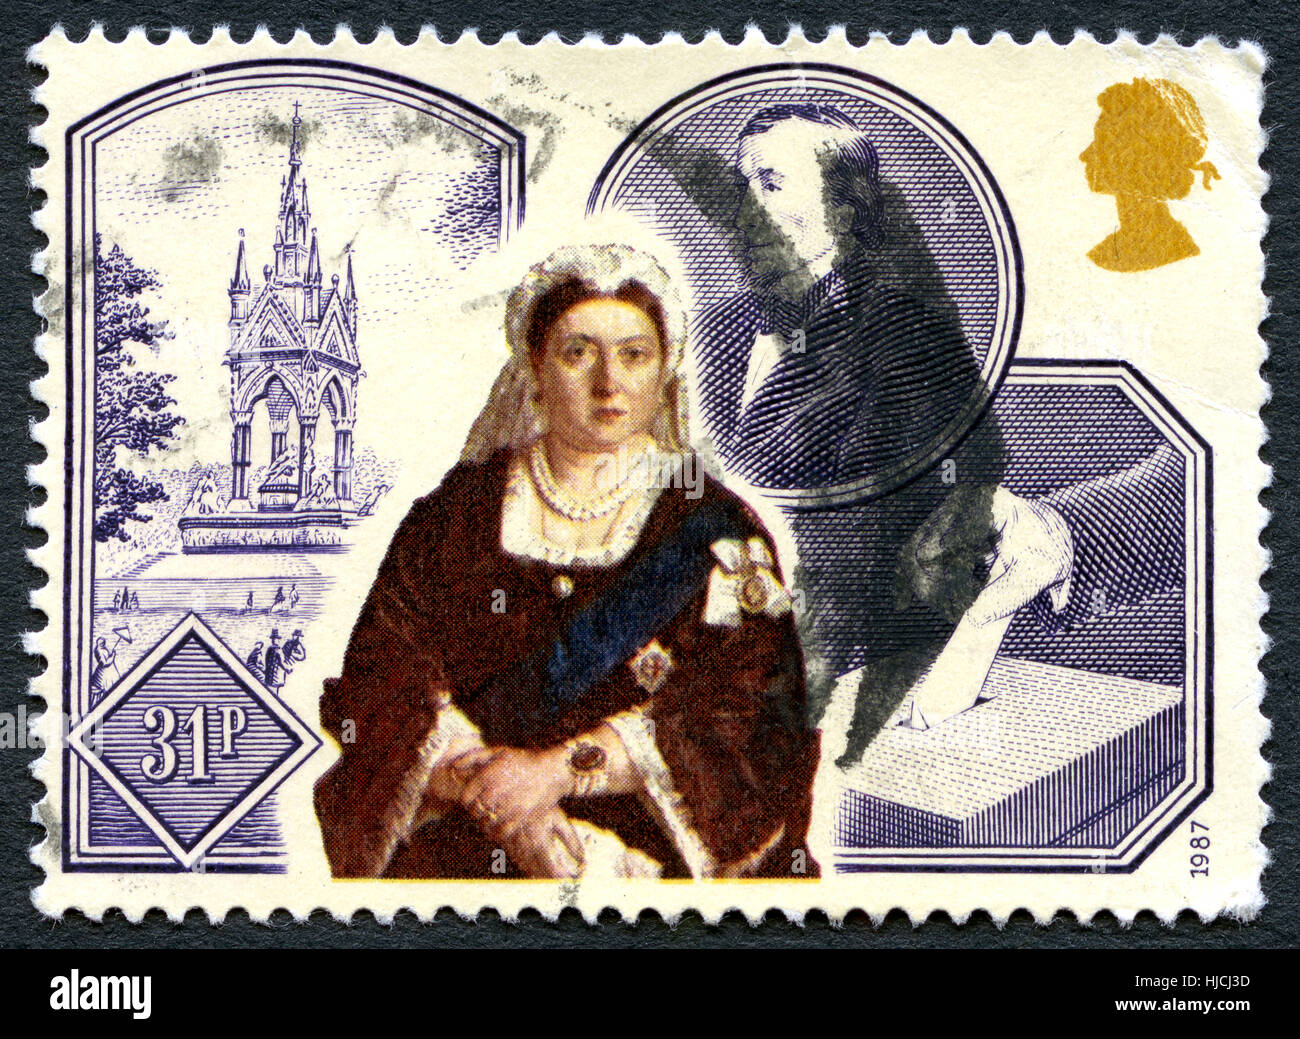 Royaume-uni - circa 1987 : un affranchissement stamo utilisé depuis le Royaume-Uni, commémorant le 150e anniversaire de l'adhésion de la reine Victoria, vers 1987. Banque D'Images